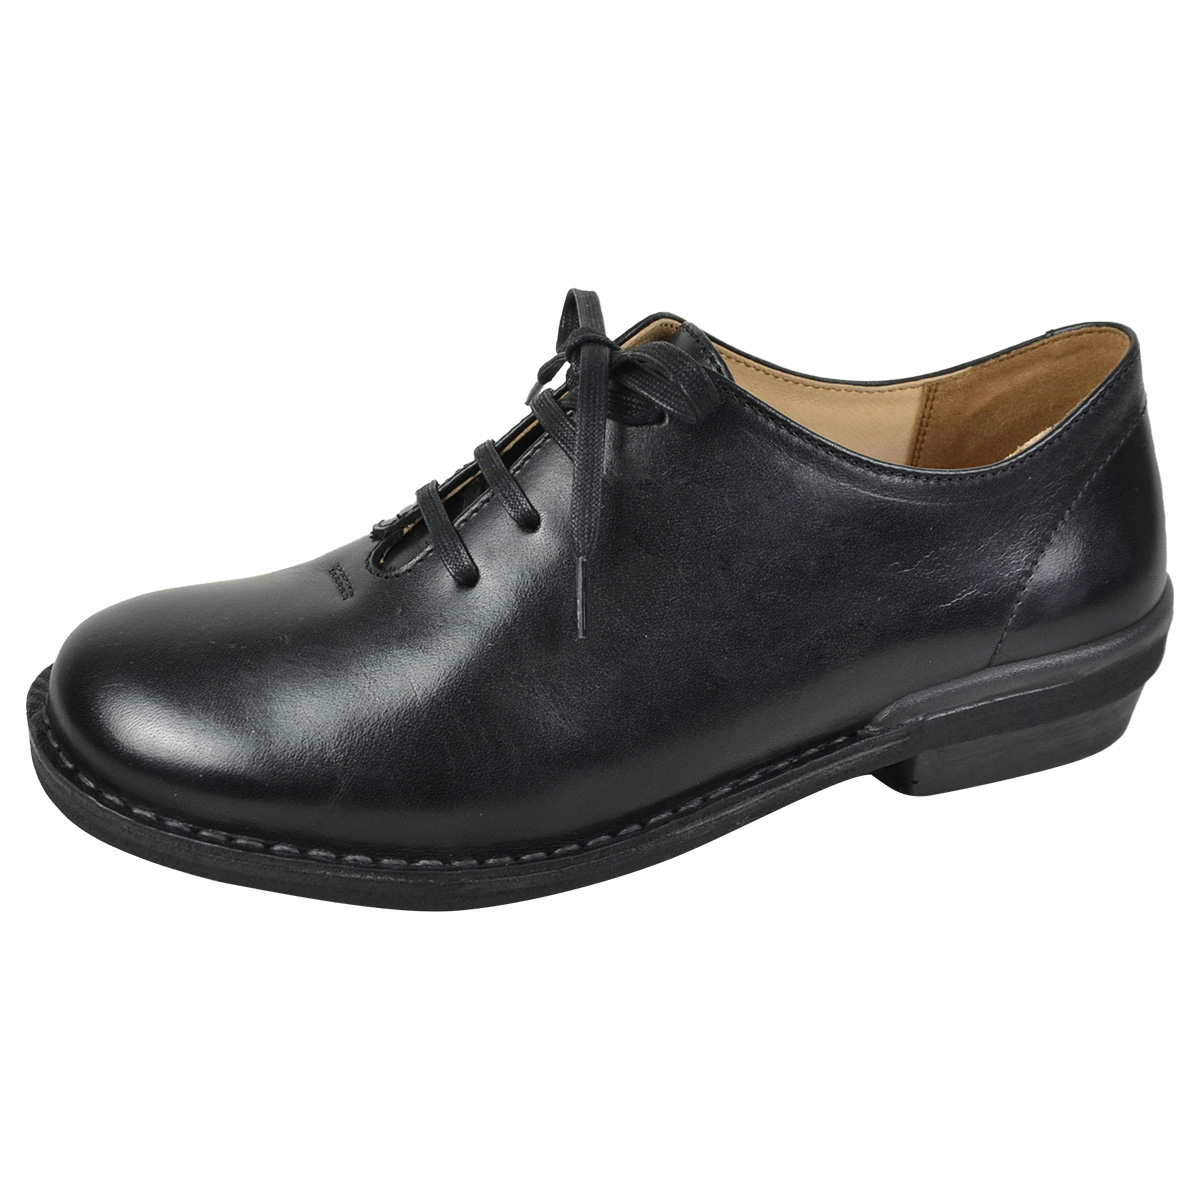 革靴 レディース 仕事 カジュアル 履きやすい レザー シューズ 黒 本革 はっ水 日本製 ムーンスター スローファクトリー